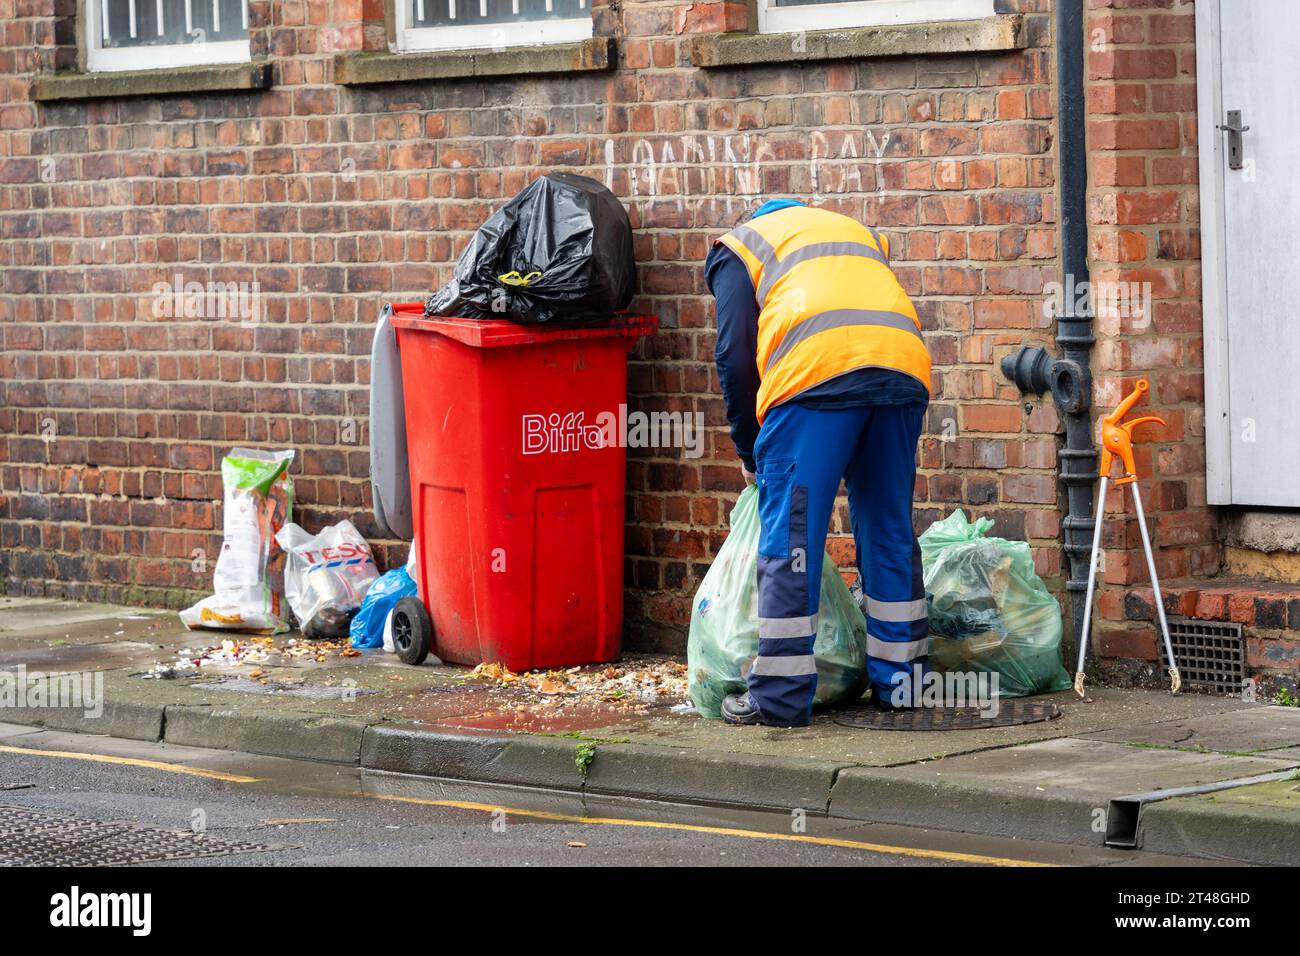 Ein Mitarbeiter des stadtrates räumt in einer Straße im Stadtzentrum von Middlesbrough, Großbritannien, die Straßenreinigung in überfüllten Mülltonnen auf. Stockfoto